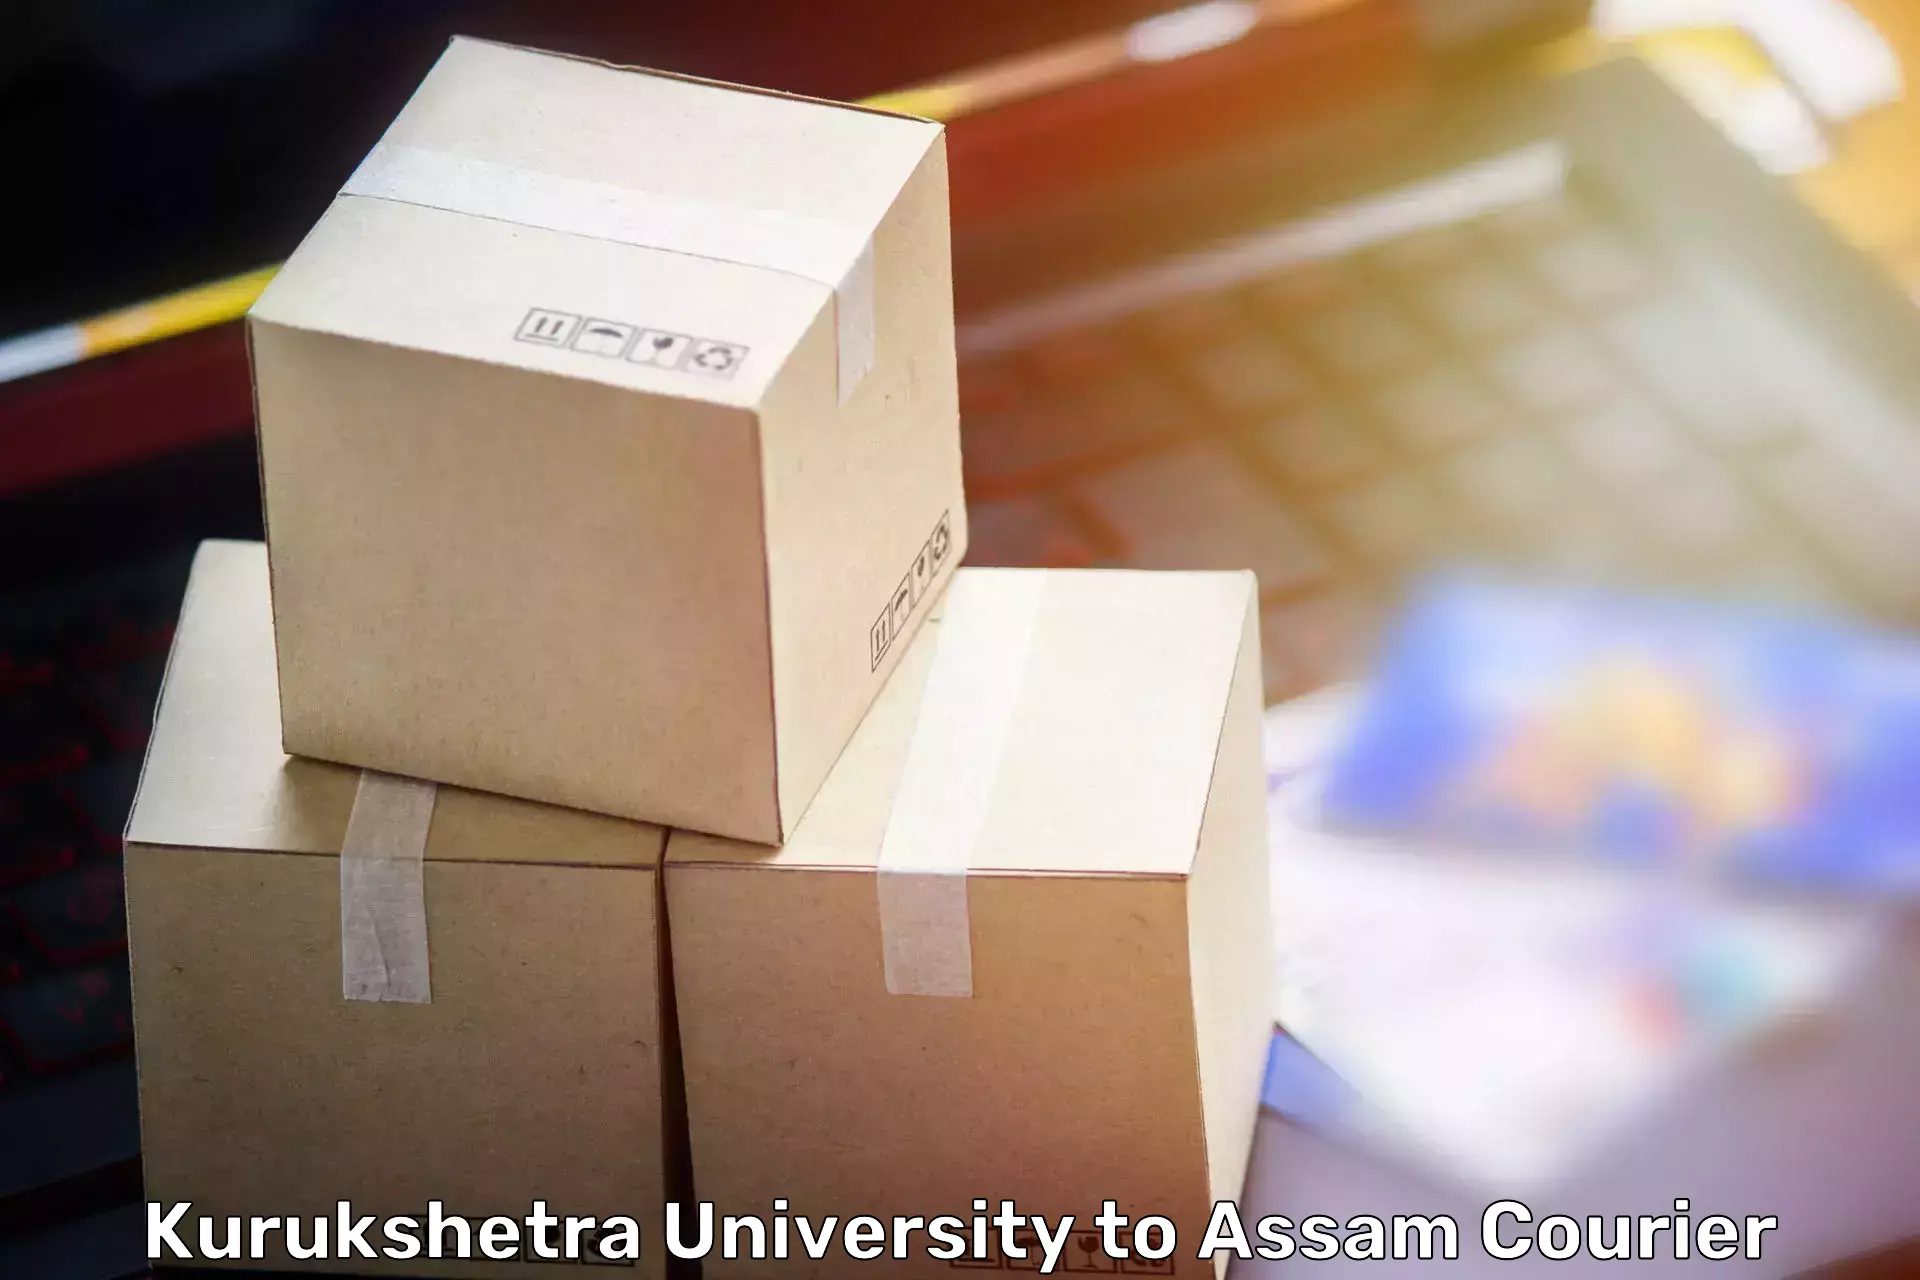 Stress-free household moving Kurukshetra University to IIT Guwahati